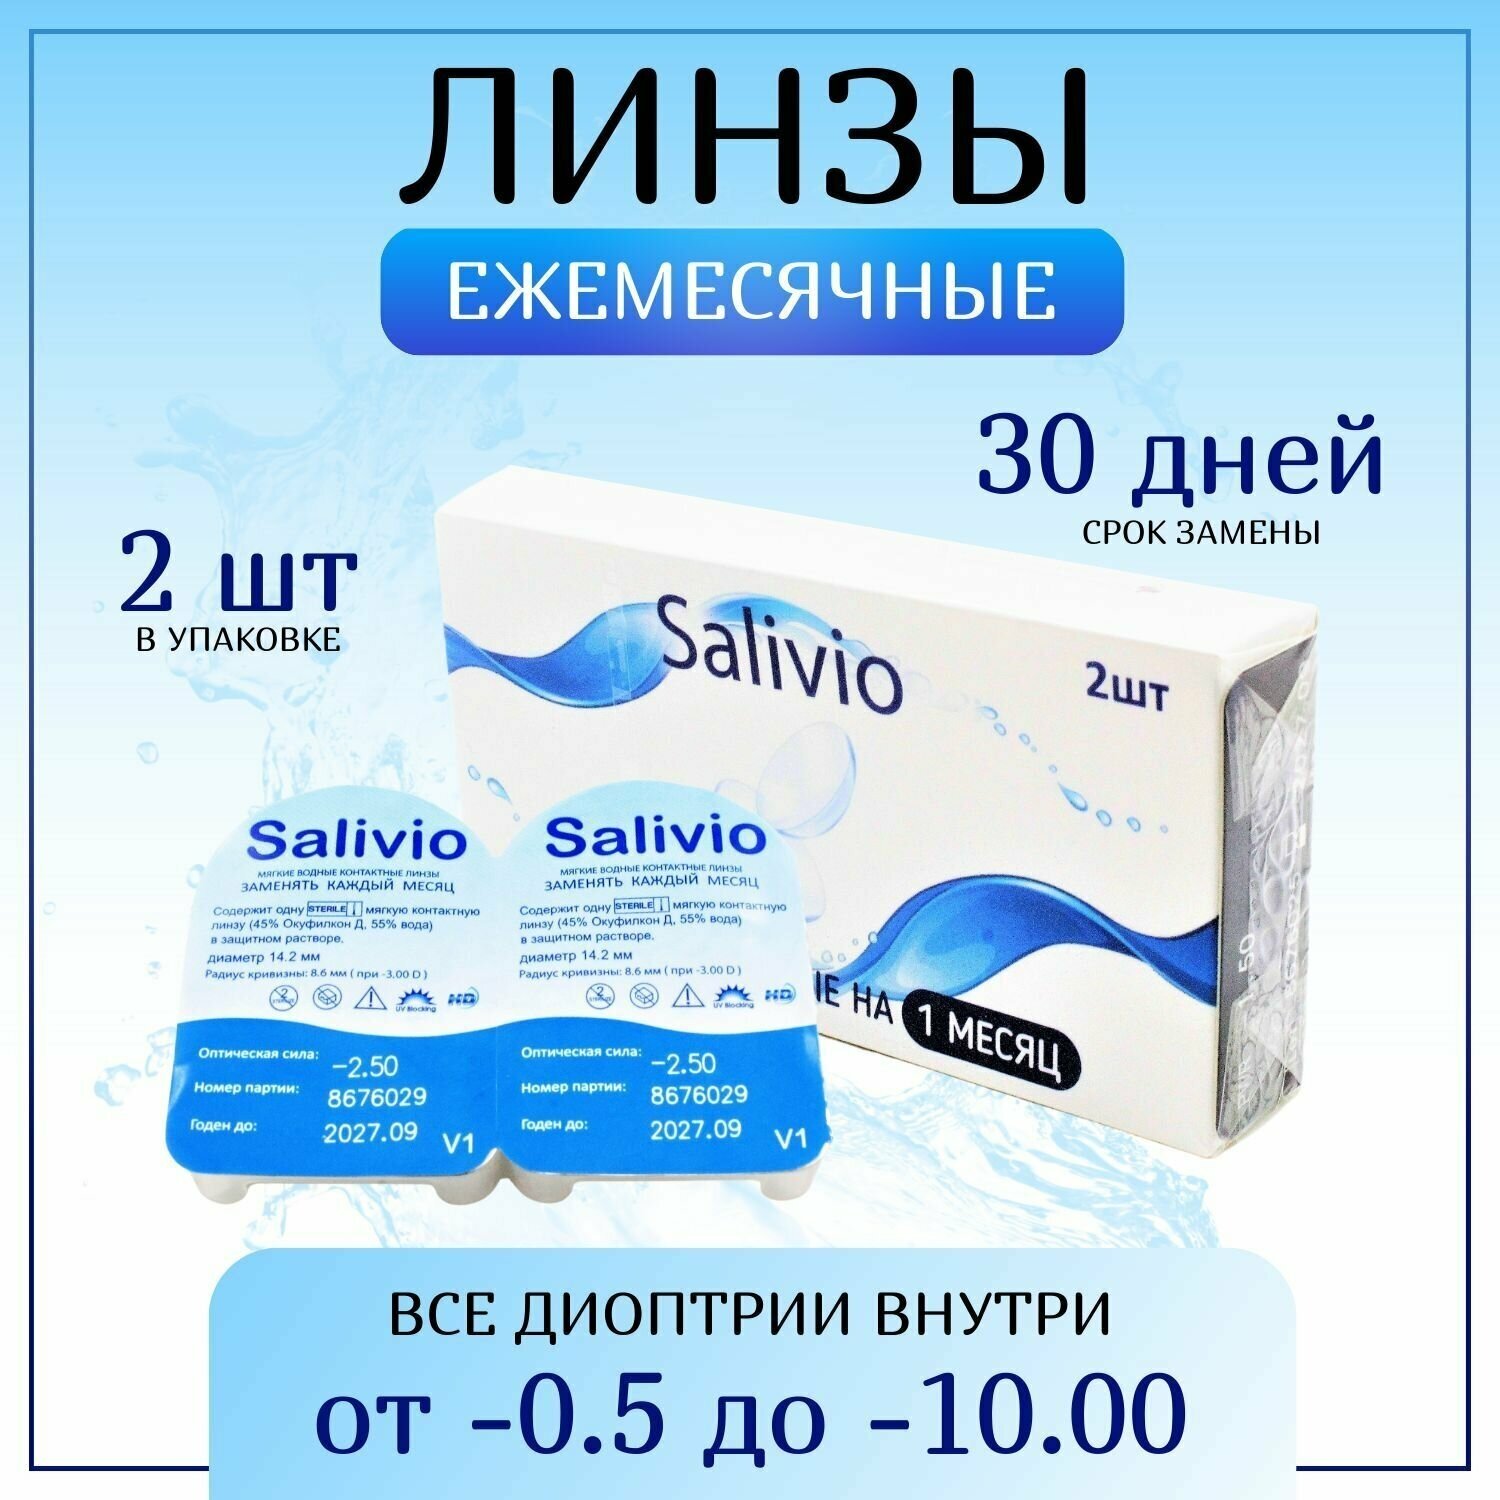 Контактные линзы, SALIVIO, -2,50 ежемесячные (30 дней), 2 штуки, прозрачные